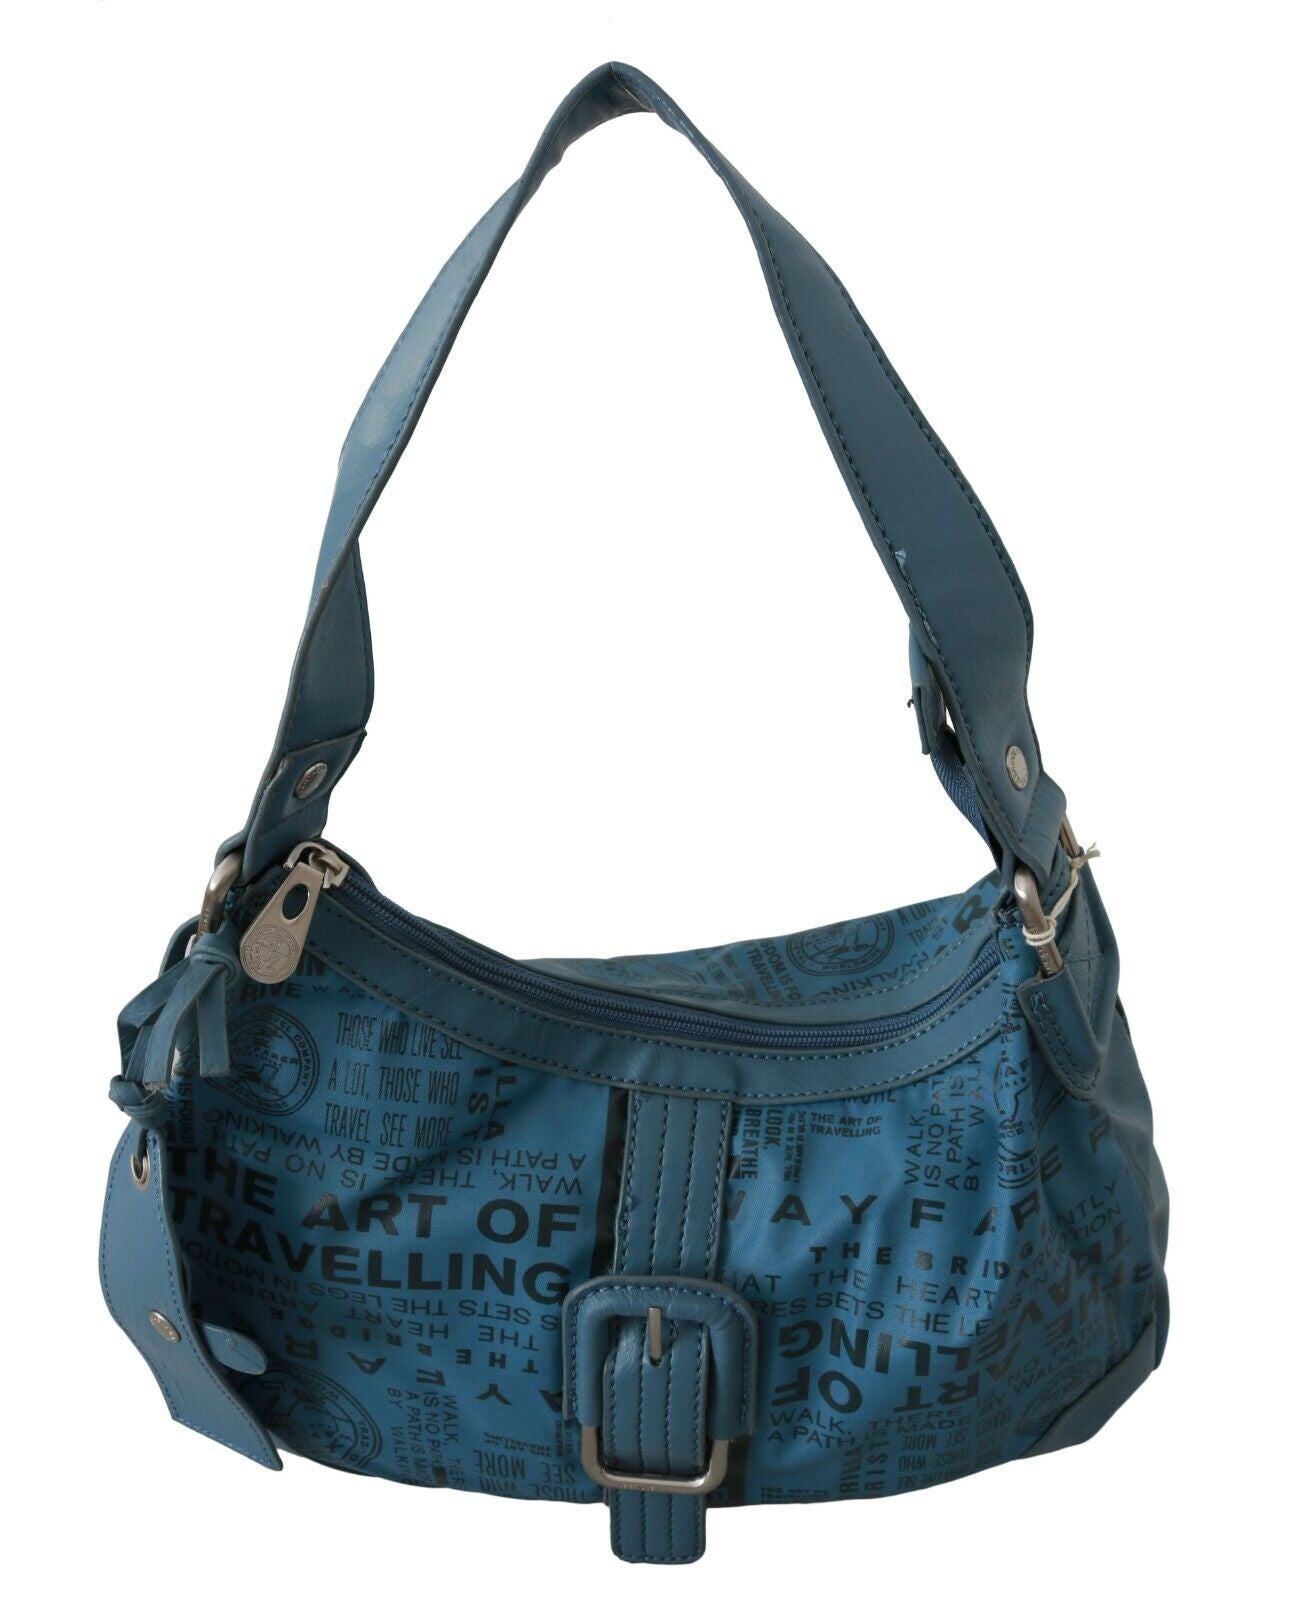 WAYFARER Shoulder Handbag Printed Purse Women Blue - Fizigo